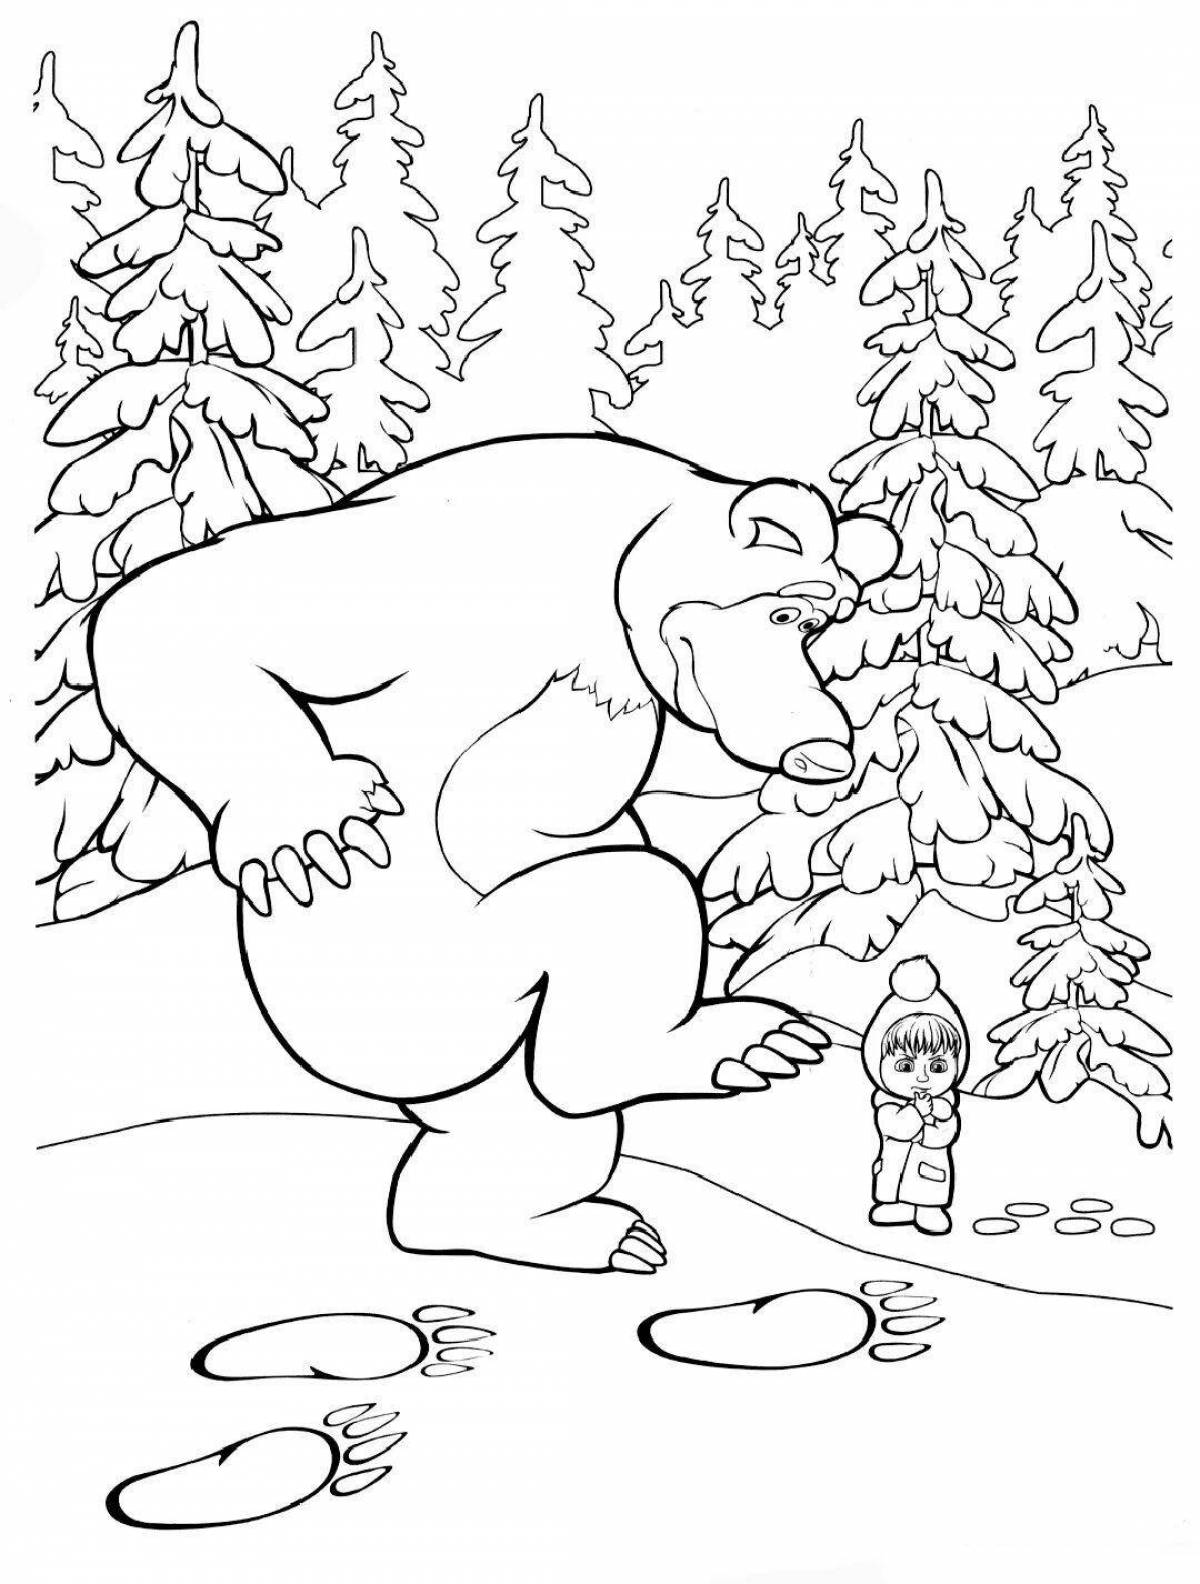 Sublime coloring page маша и медведь зима